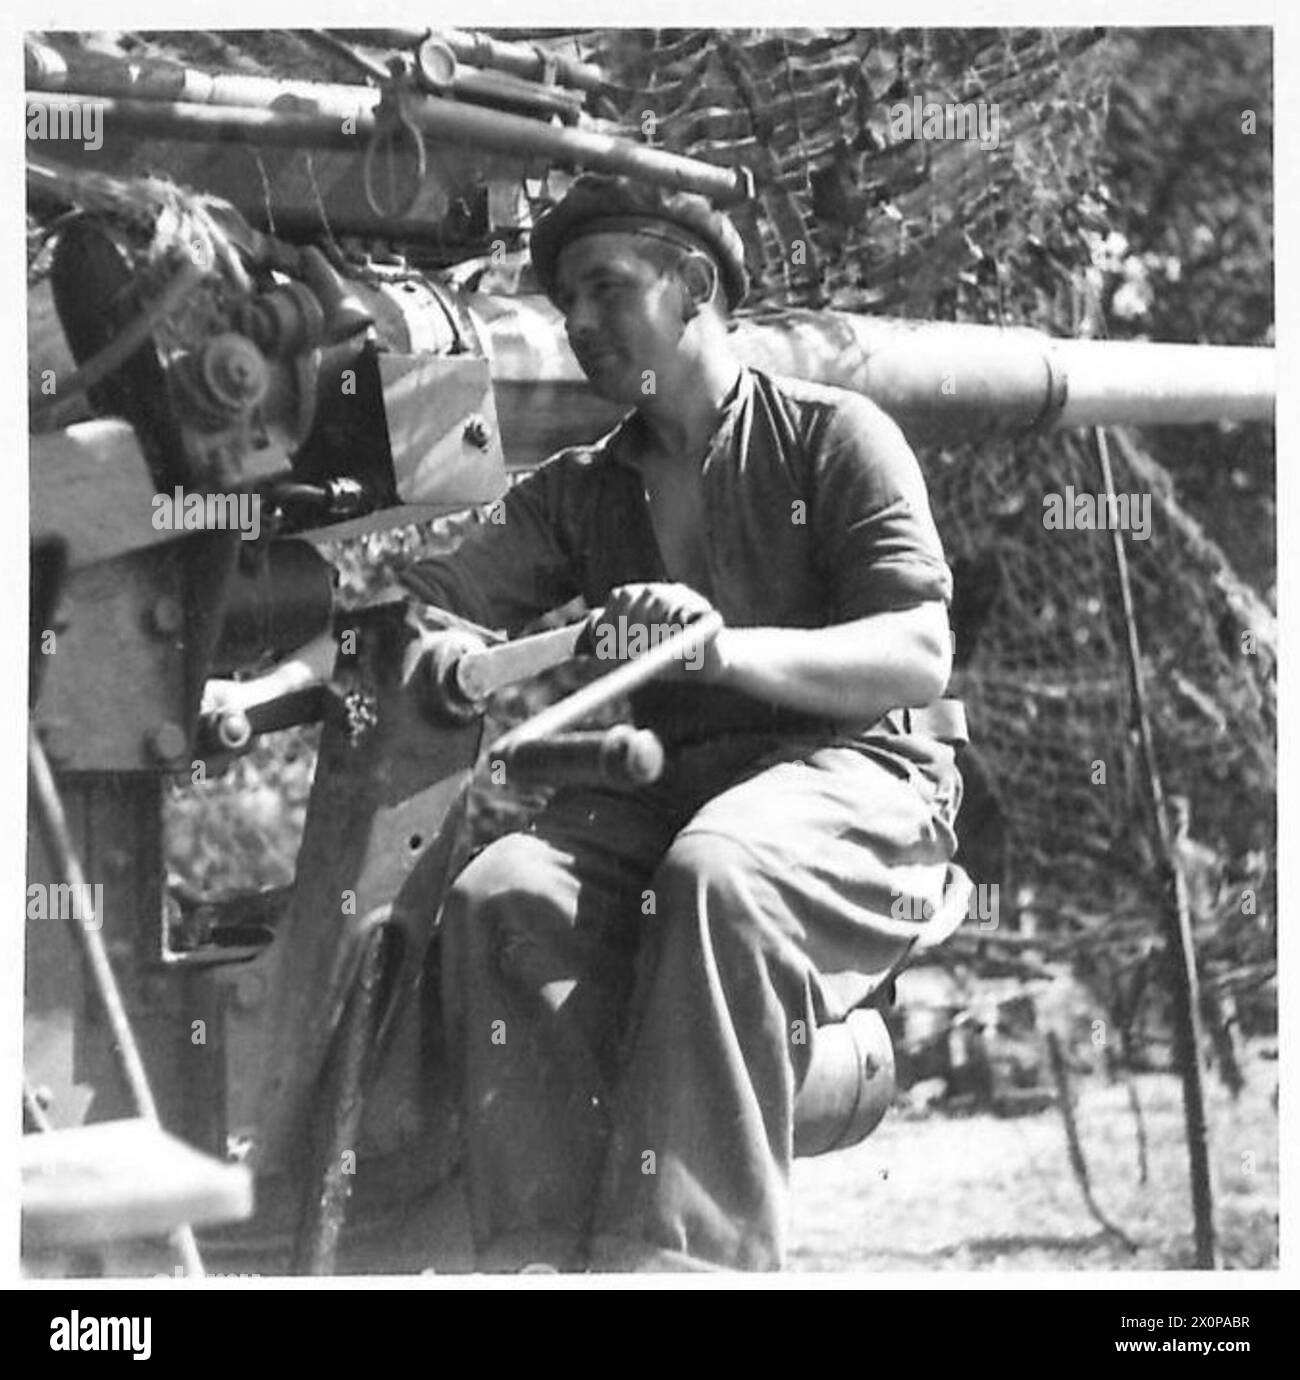 BATTLE OF BRITAIN ACK-ACK GUNNERS (IN NUOVO RUOLO) - GNR. Alfred Ballard di Hackney Wick - uno sparatutto. Negativo fotografico, British Army, 21st Army Group Foto Stock